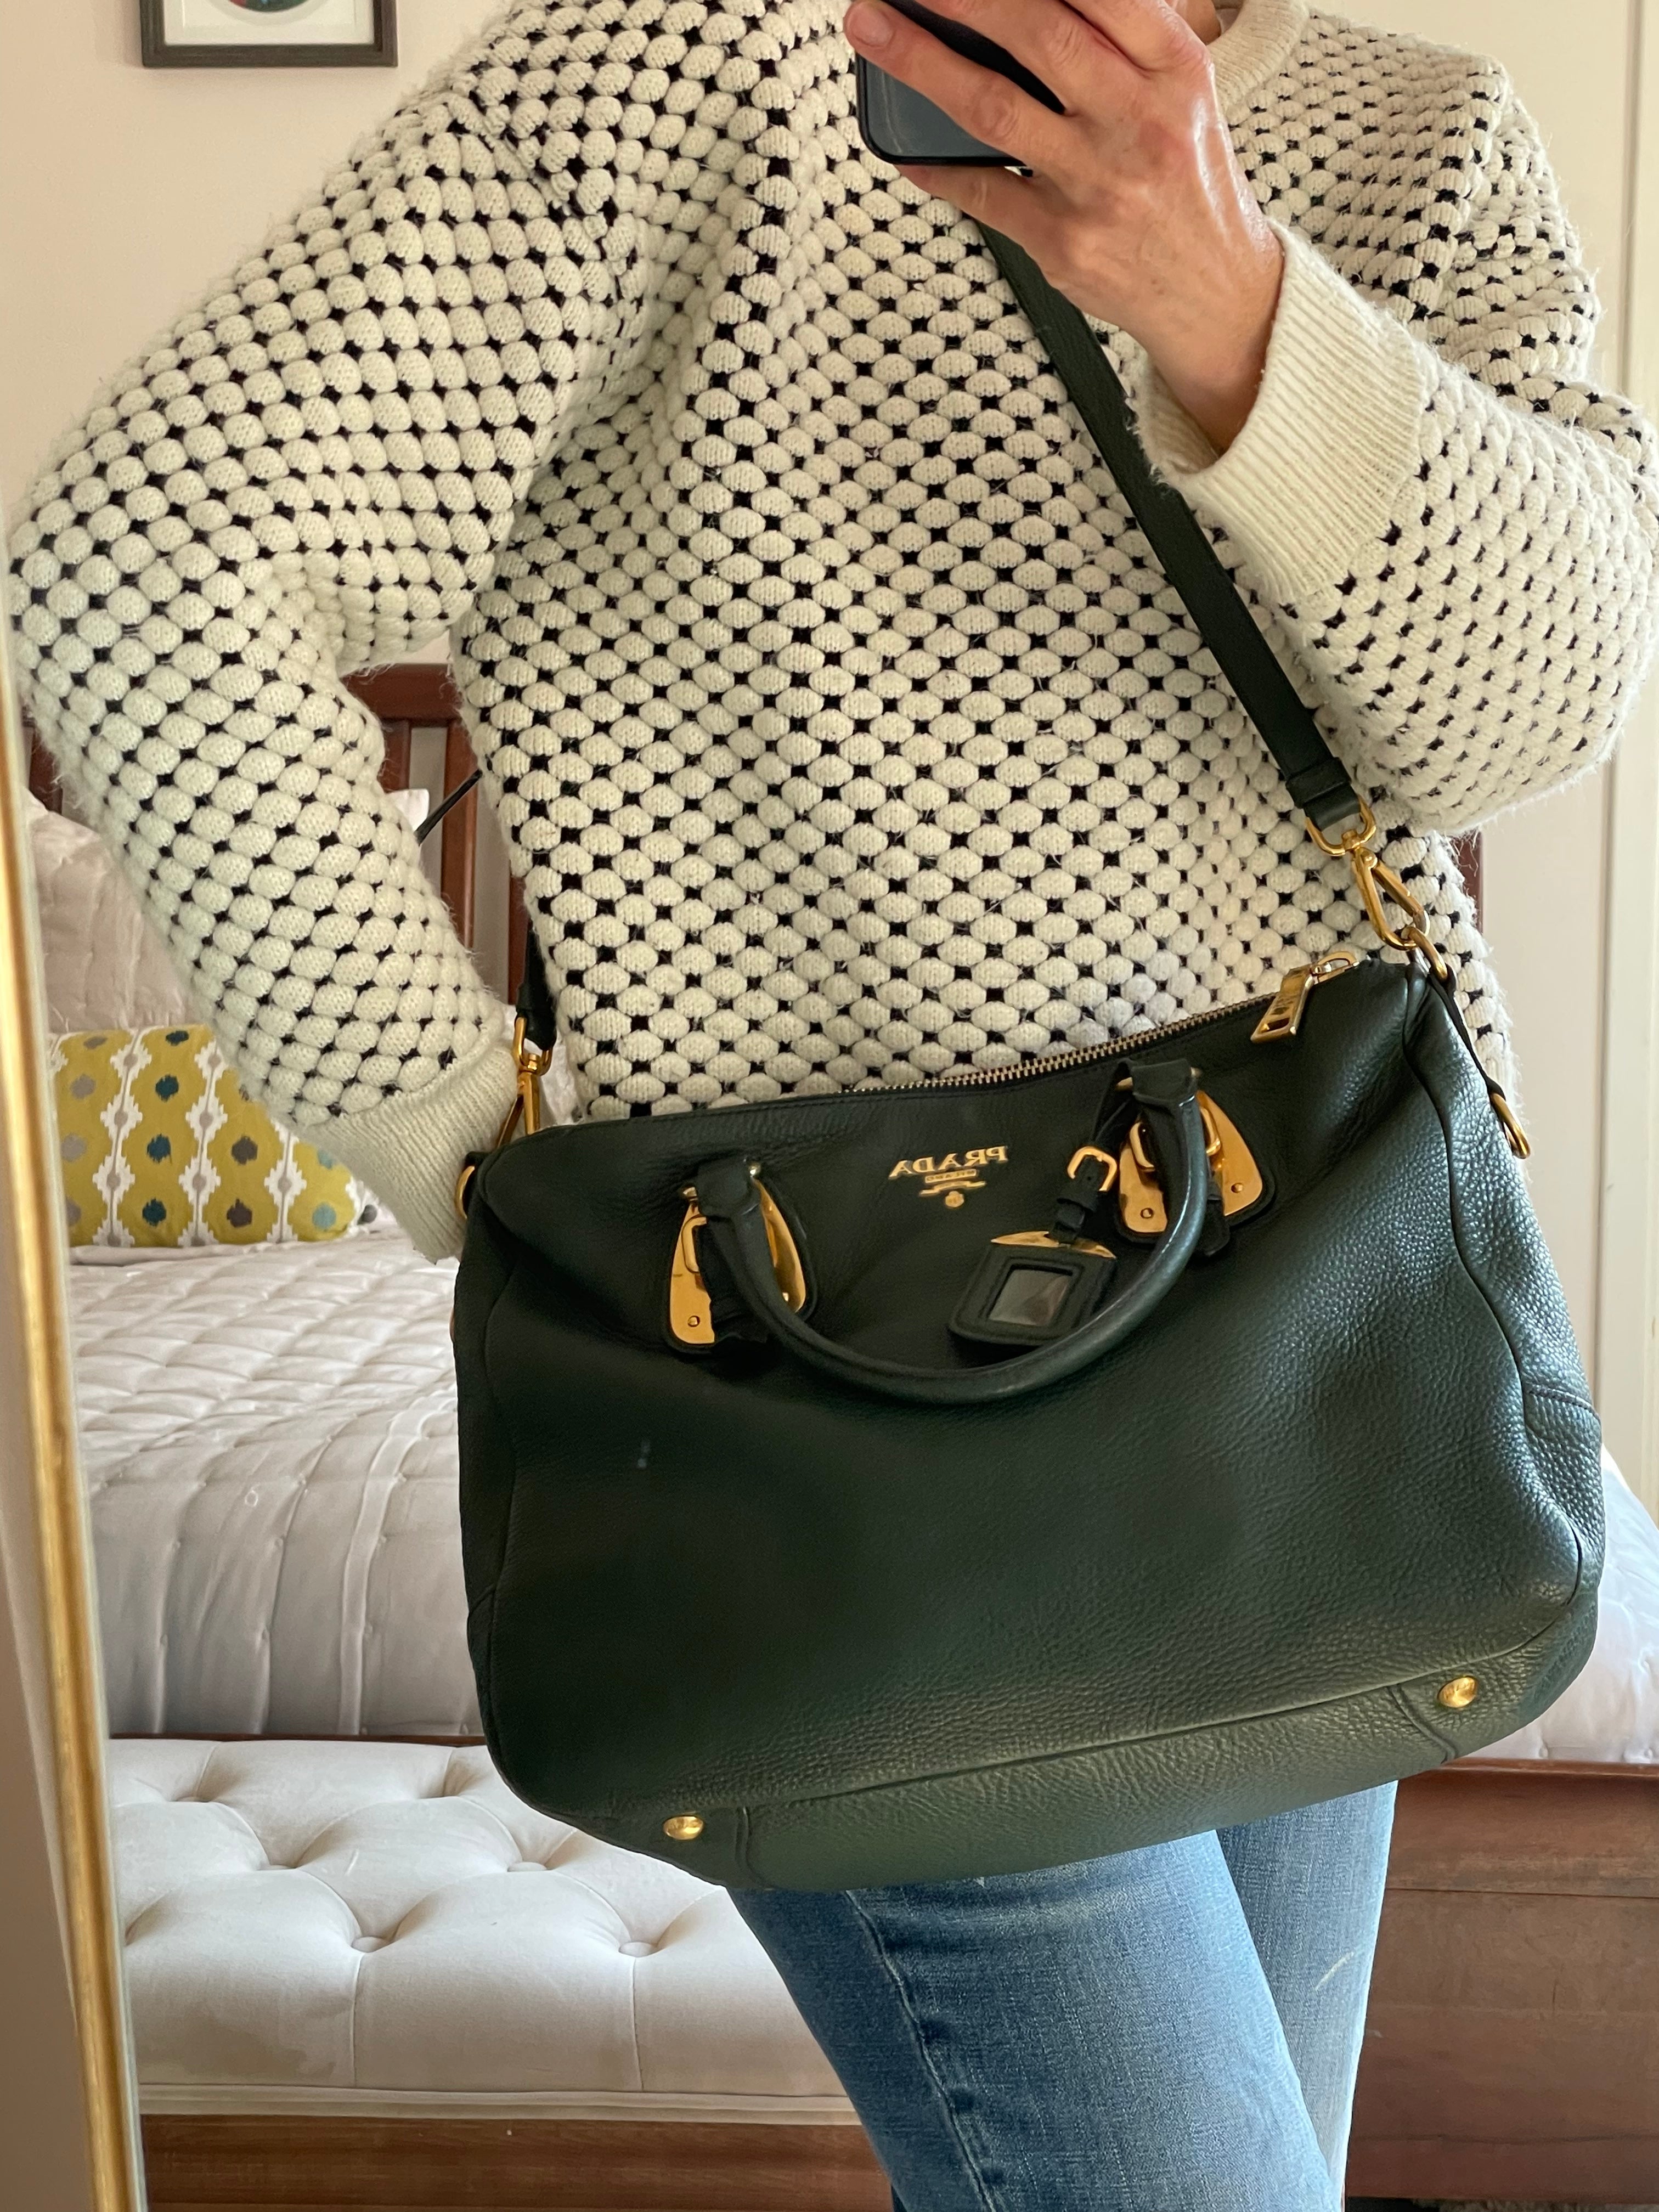 Prada Bag 🌹 - Harper's Bazaar UK September 2019 | Beutel, Taschen, Nähen